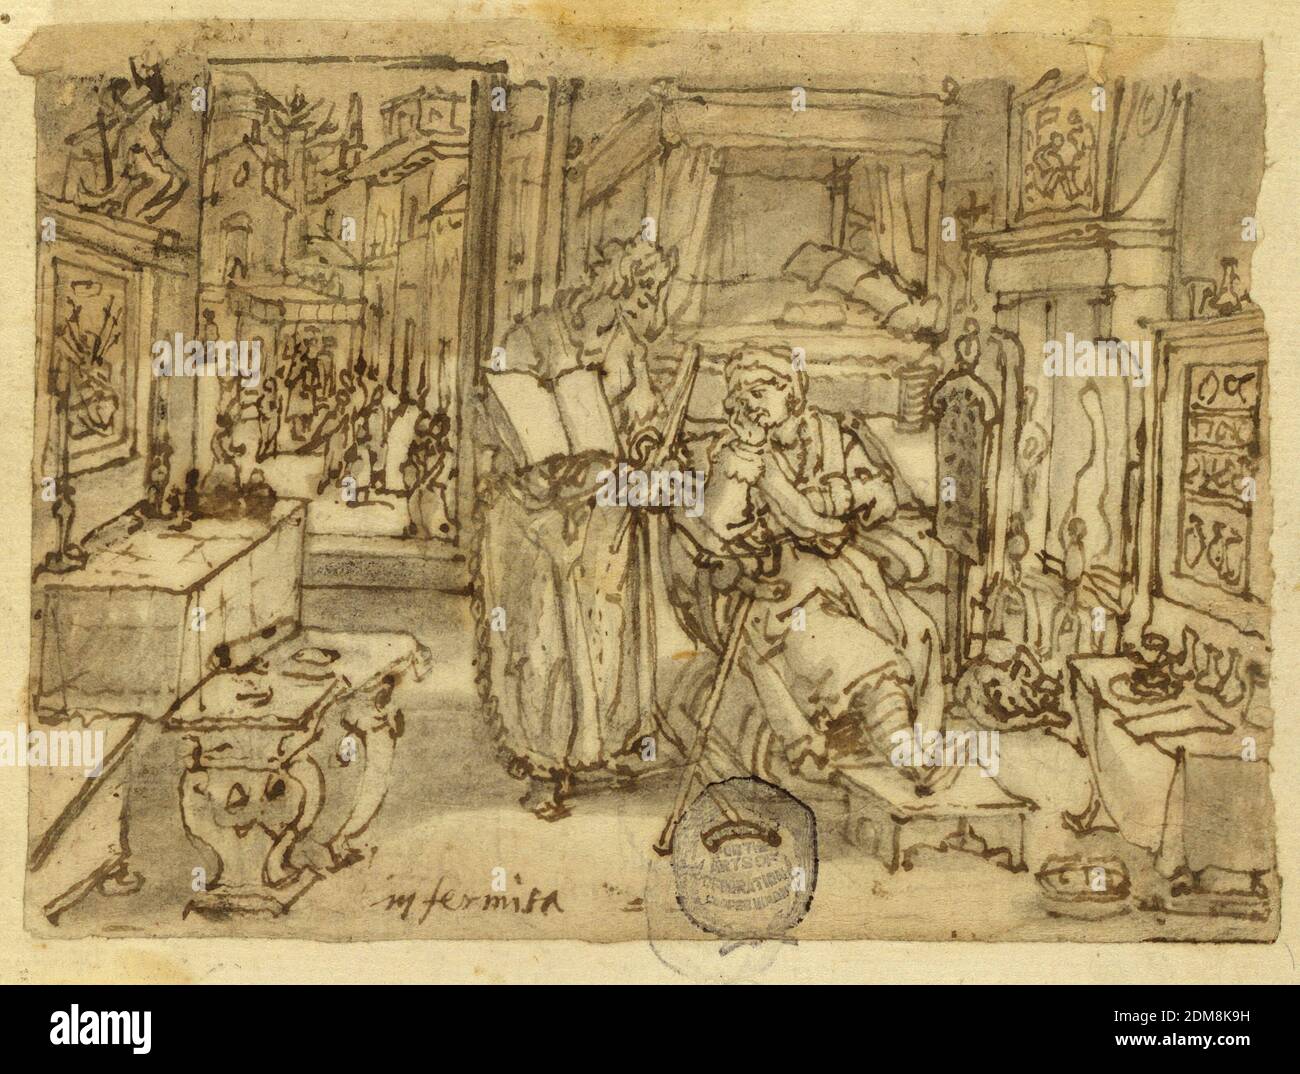 Seite eines Skizzenbuches; Gebrechen, Jan van der Straet, genannt Stradanus, Flämisch, 1523–1605, braune Tusche und Waschung auf Papier, horizontales Rechteck. Innen, mit einer alten Frau in einem Sessel vor einem Feuer sitzen. Ihr linkes Bein ruht auf einem Fußhocker, Krücken sind neben ihr. Eine Frau steht zu ihrer Rechten und hält ein offenes Buch. Durch die offene Tür, im Hintergrund, links, steht eine Gruppe von Figuren auf dem Stadtplatz. Inschrift, unten links: 'Infirmità.', Niederlande, ca. 1590, Figuren, Zeichnung Stockfoto